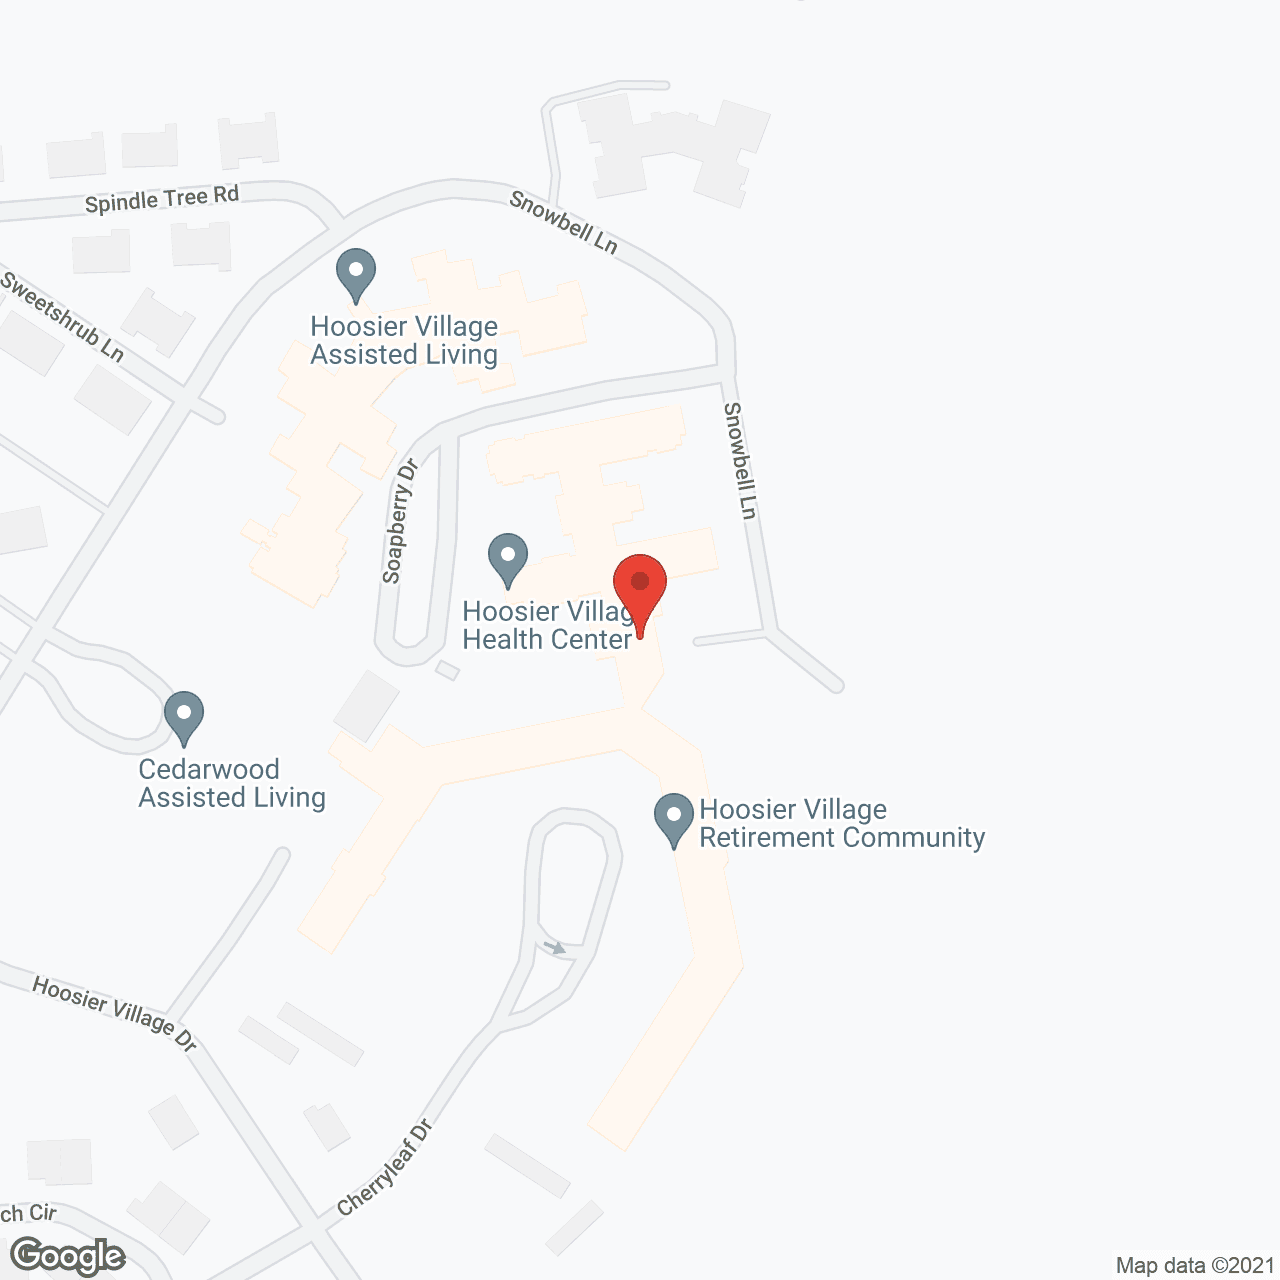 Hoosier Village in google map